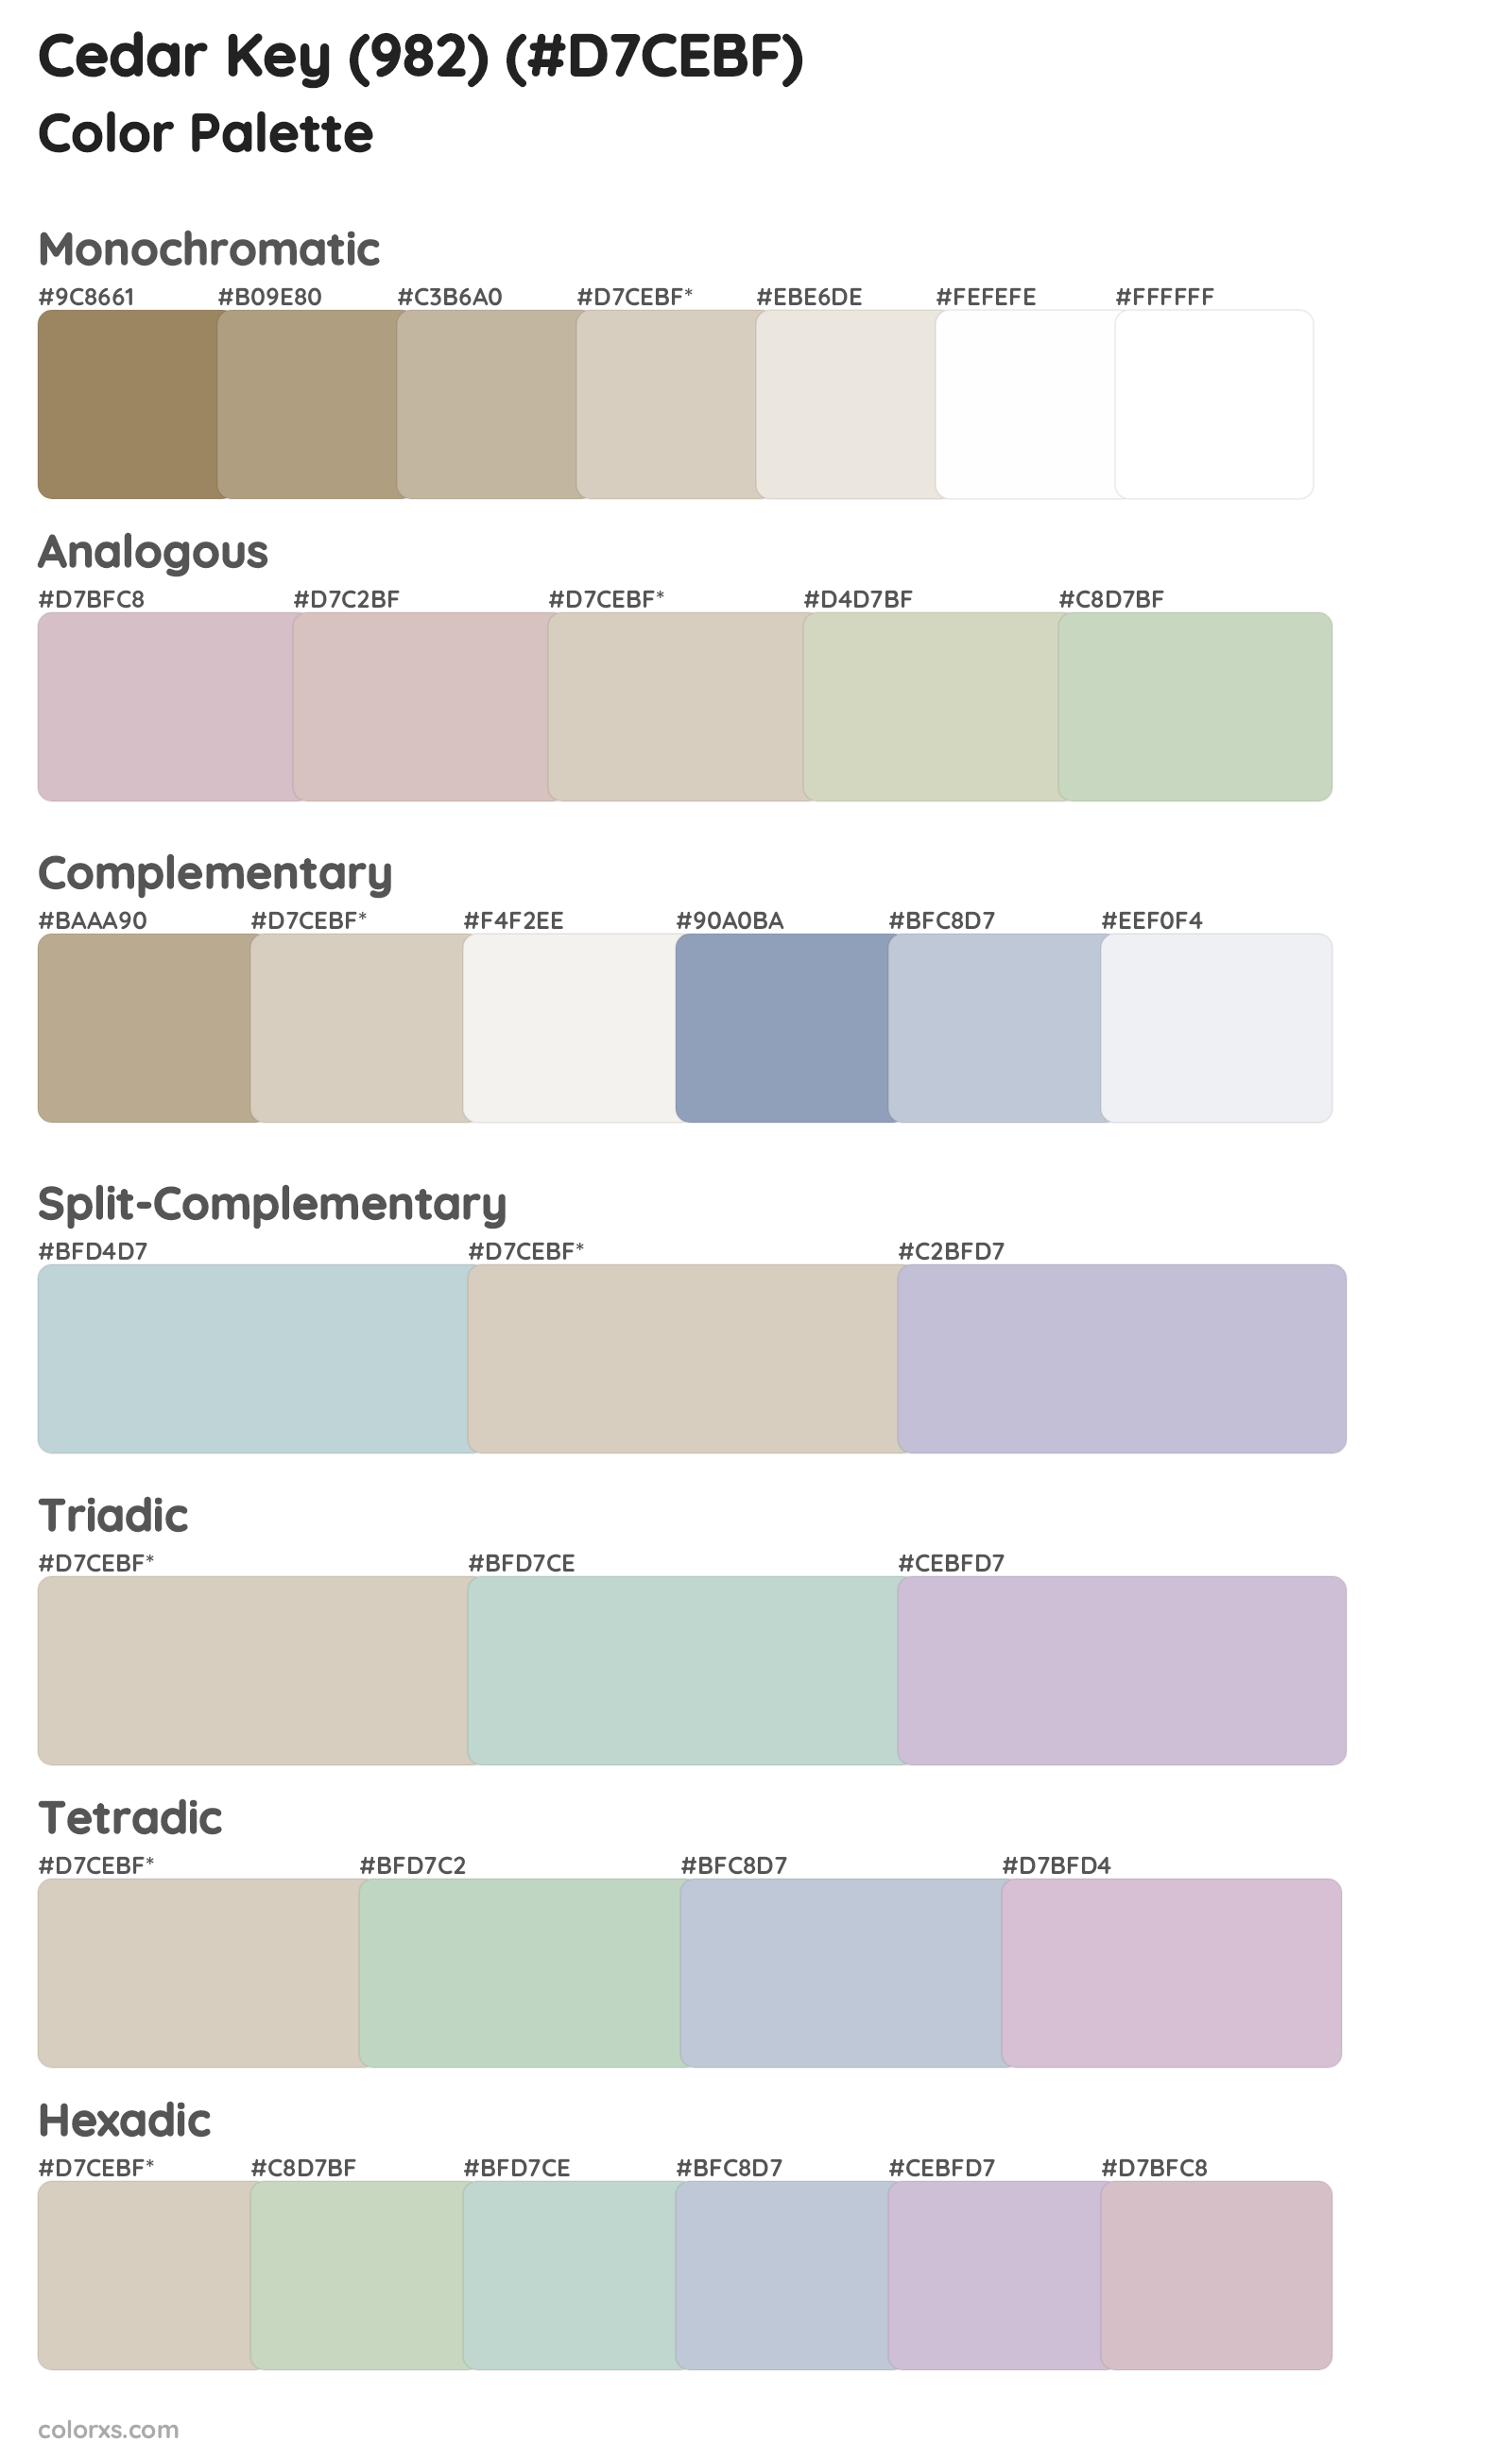 Cedar Key (982) Color Scheme Palettes